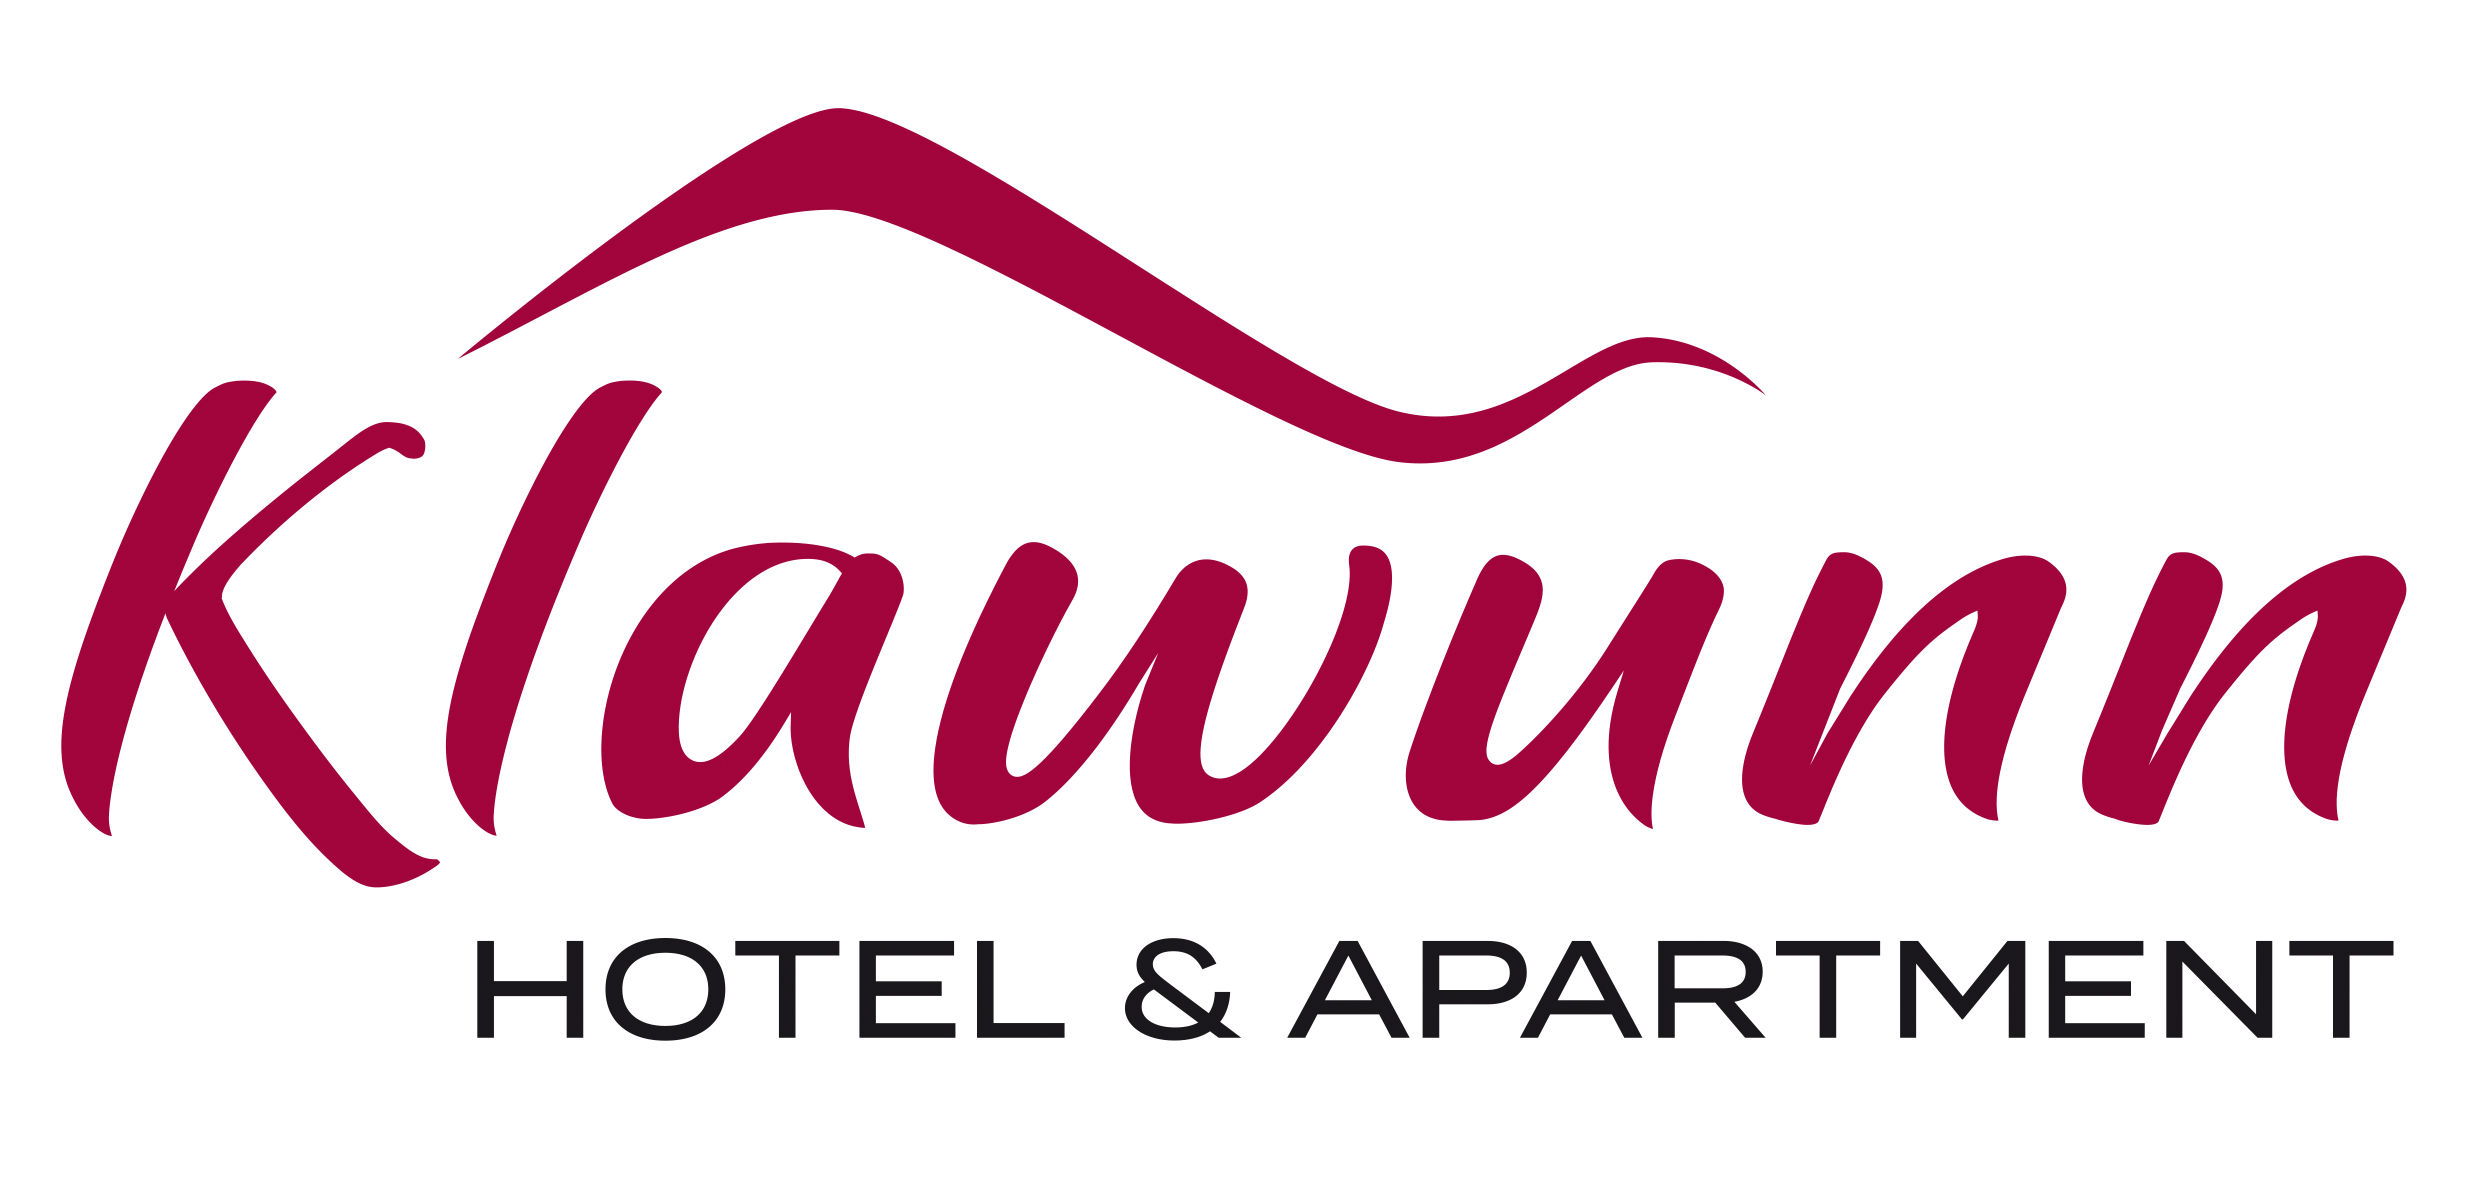 Hotel Klawunn in der Region Zell am See-Kaprun